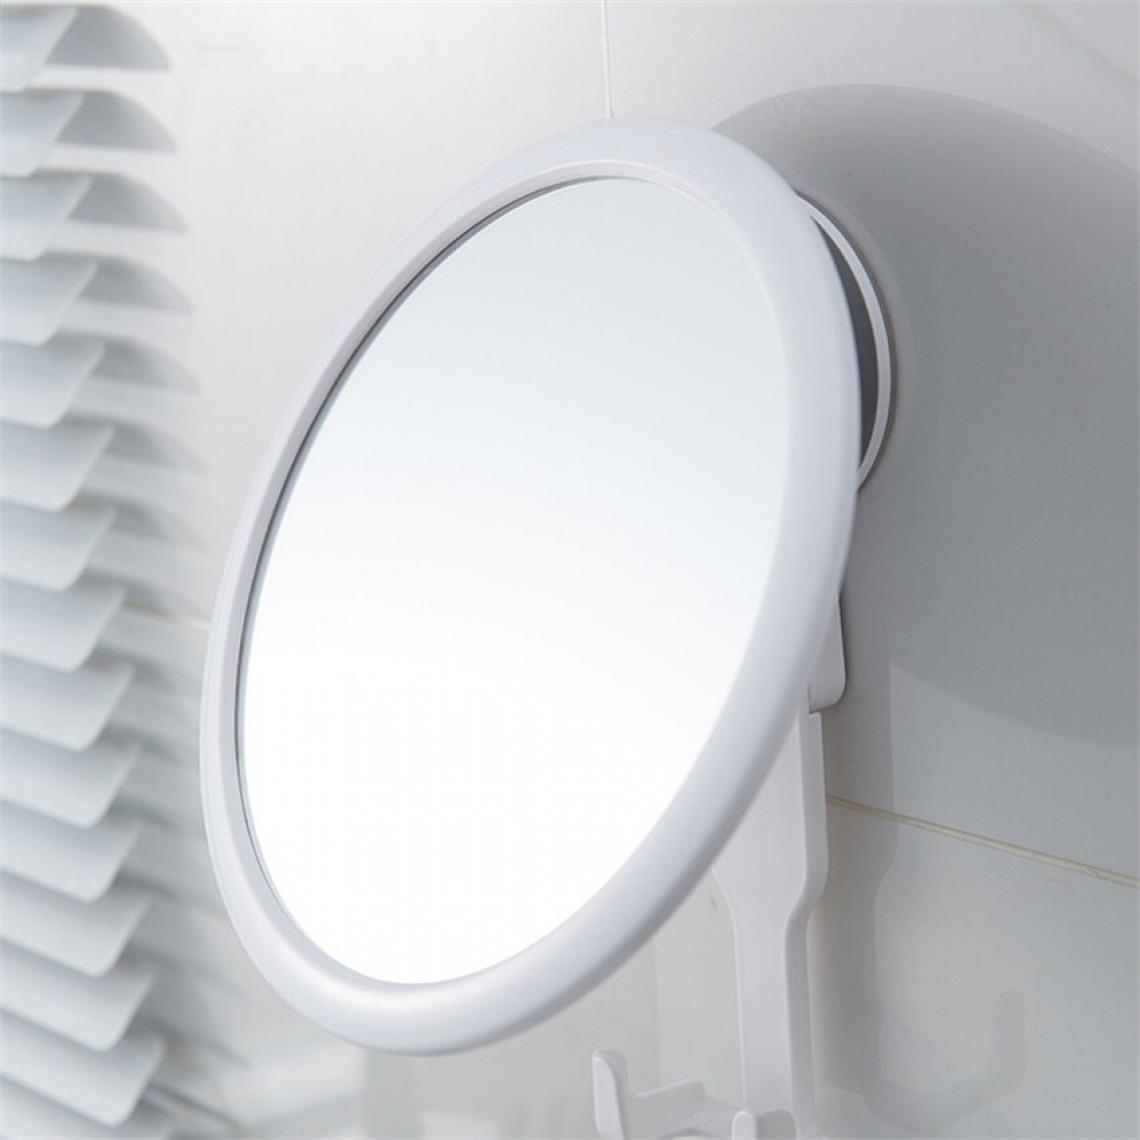 Universal - Perceuse fourneau tournant réglable miroir de salle de bains aspirateur miroir de rasage autocollant miroir de douche murale de salle de bains(blanche) - Miroir de salle de bain